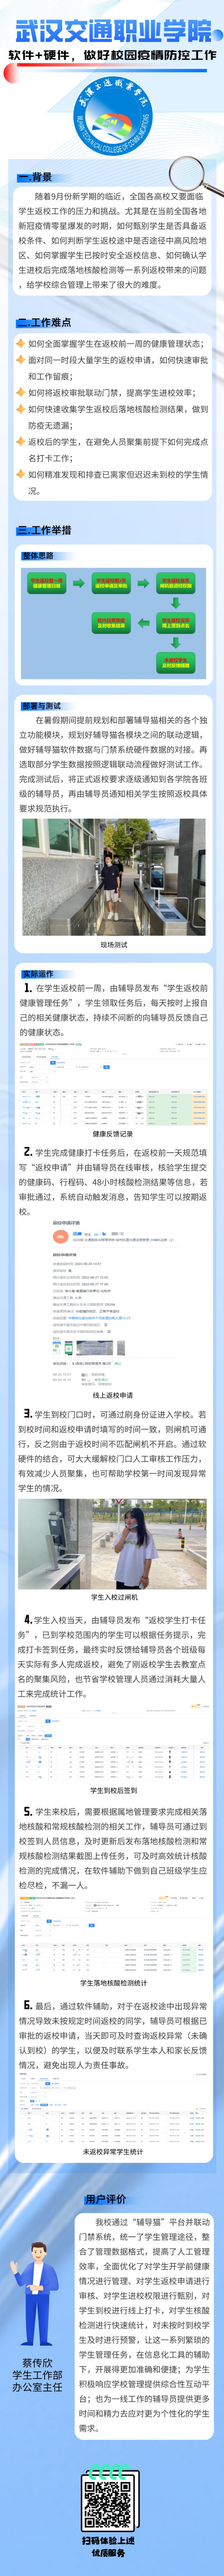 武汉交通职业学院——软件+硬件，做好校园疫情防控工作 辅导猫